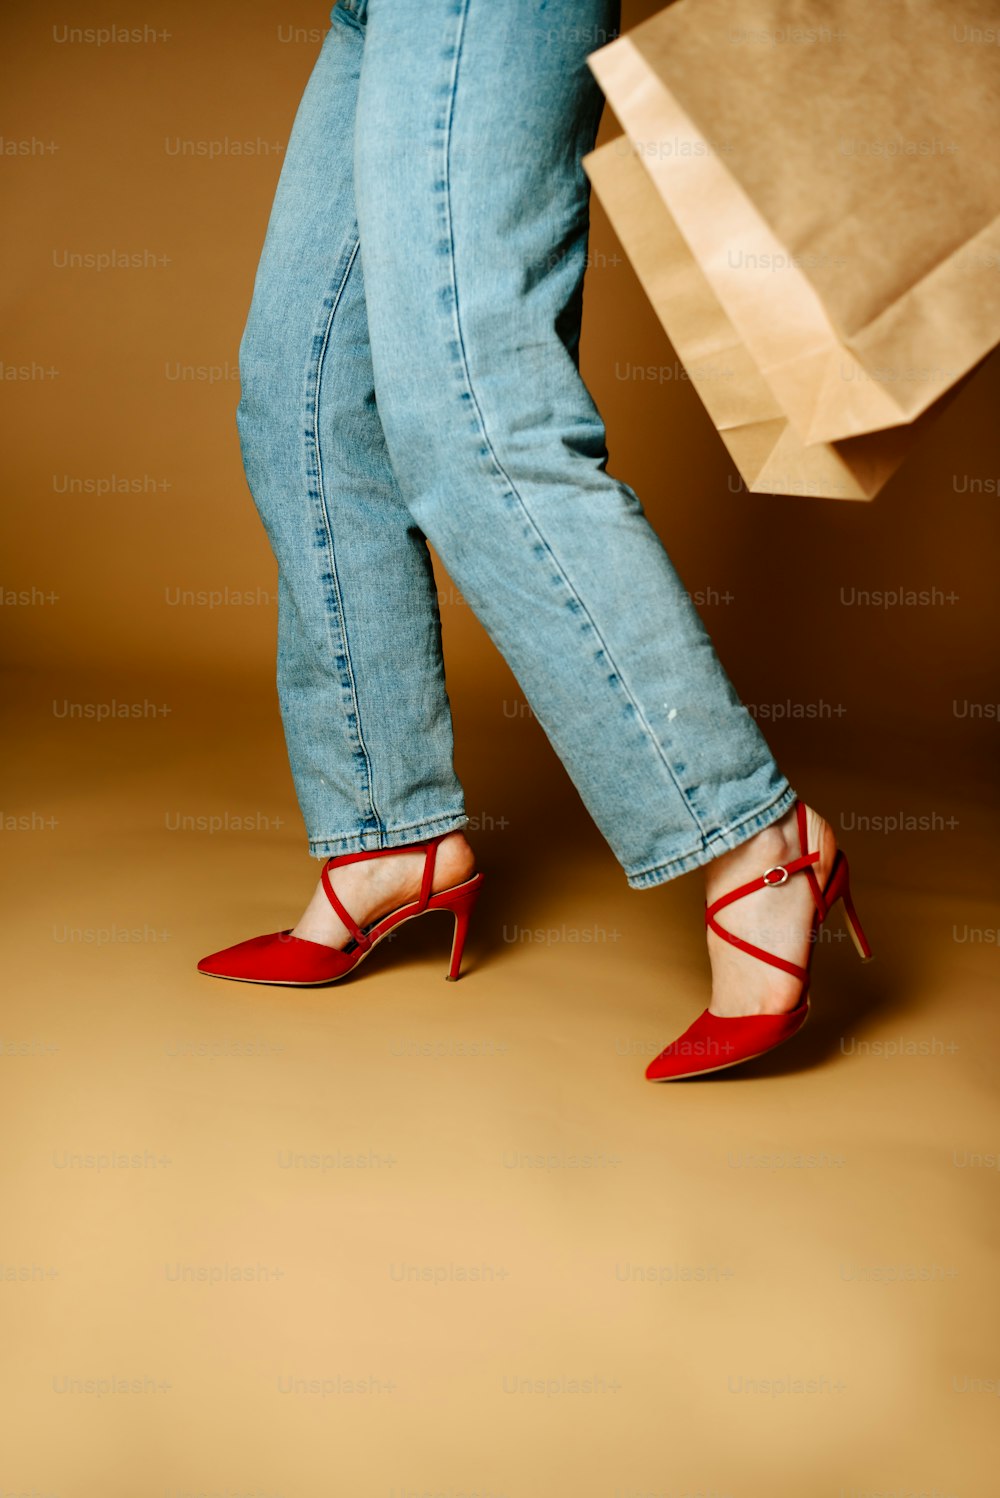 Foto Las de una mujer con tacones altos sosteniendo una bolsa de compras – Imagen en Unsplash